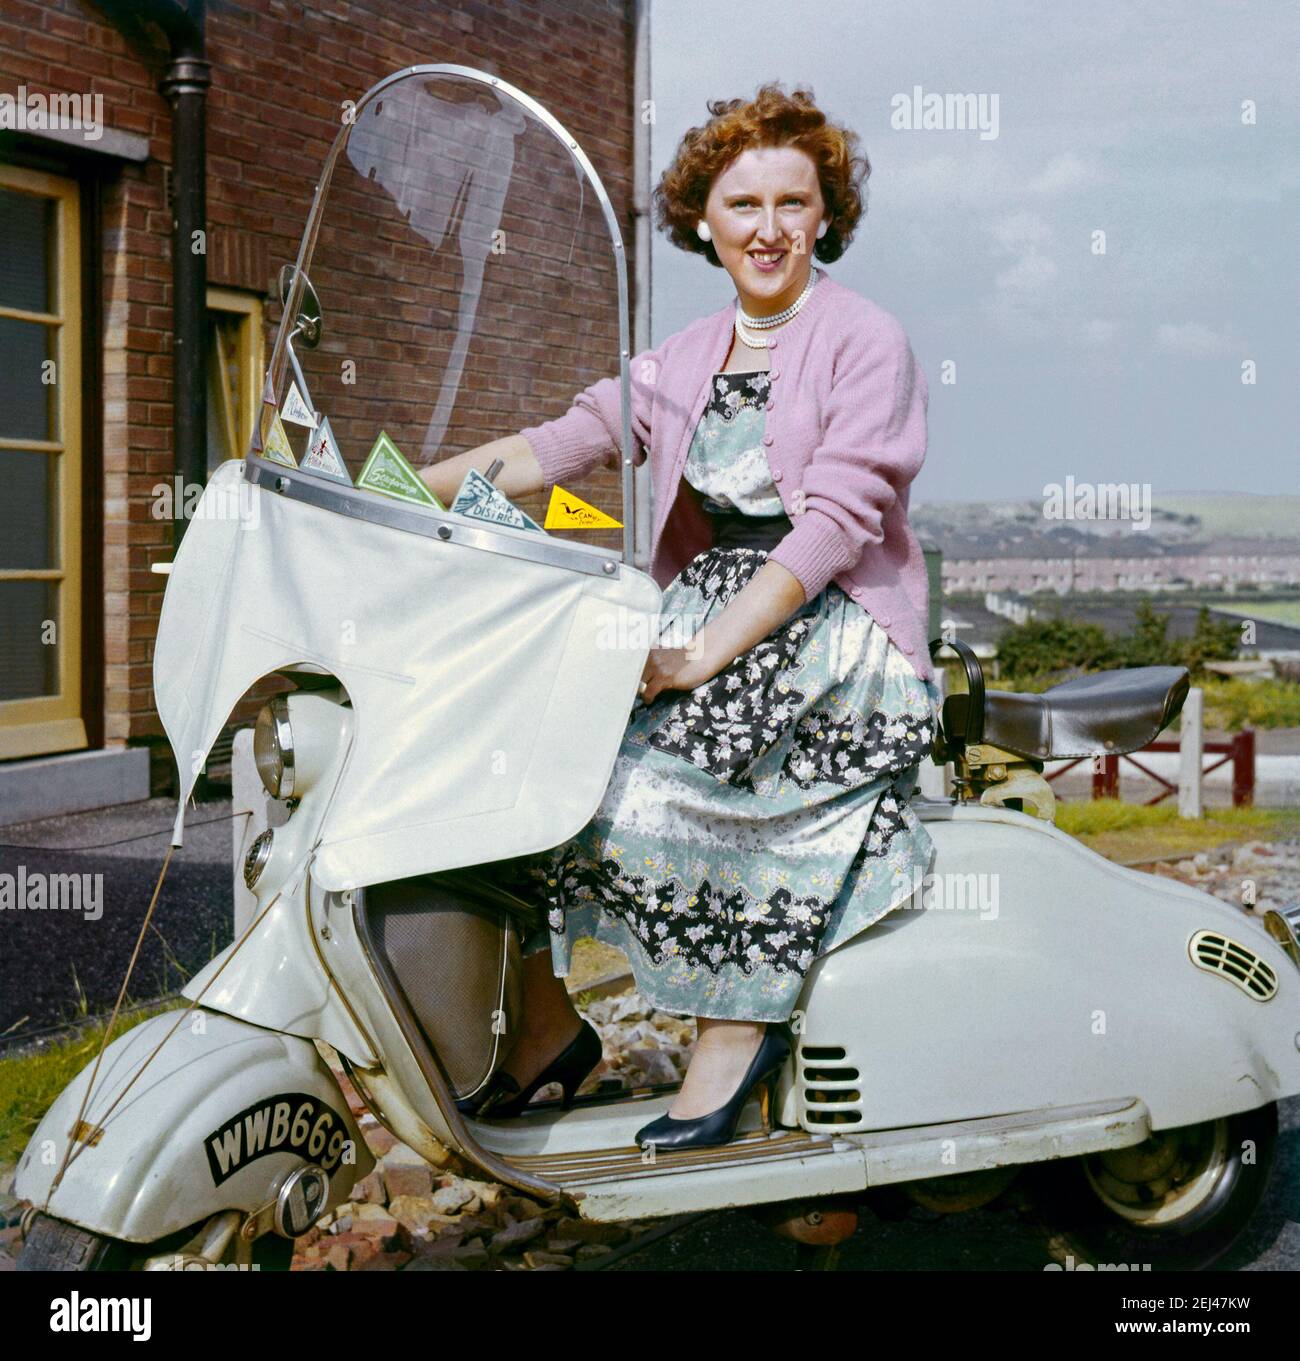 Mujer joven en scooter c.1960. Los lugares que el scooter visitado se muestran como pennants en el parabrisas - una fotografía clásica de justo de la época en que